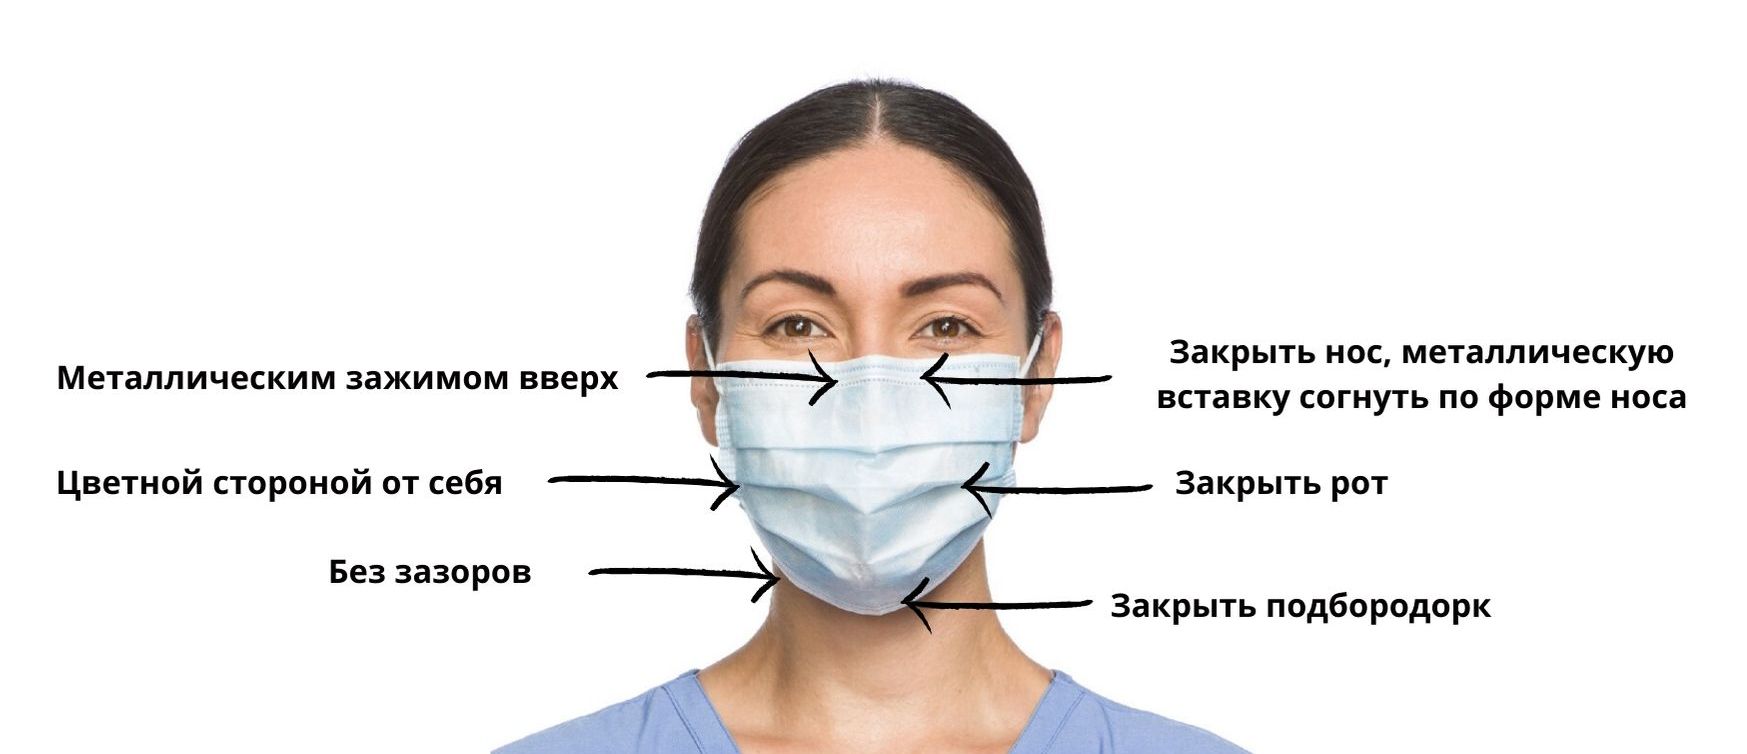 Как сделать правильную маску. Как правильно носить маскк. Правильное ношение медицинской маски. Как правильно носить Маск. Как правильно носить медицинскую маску.